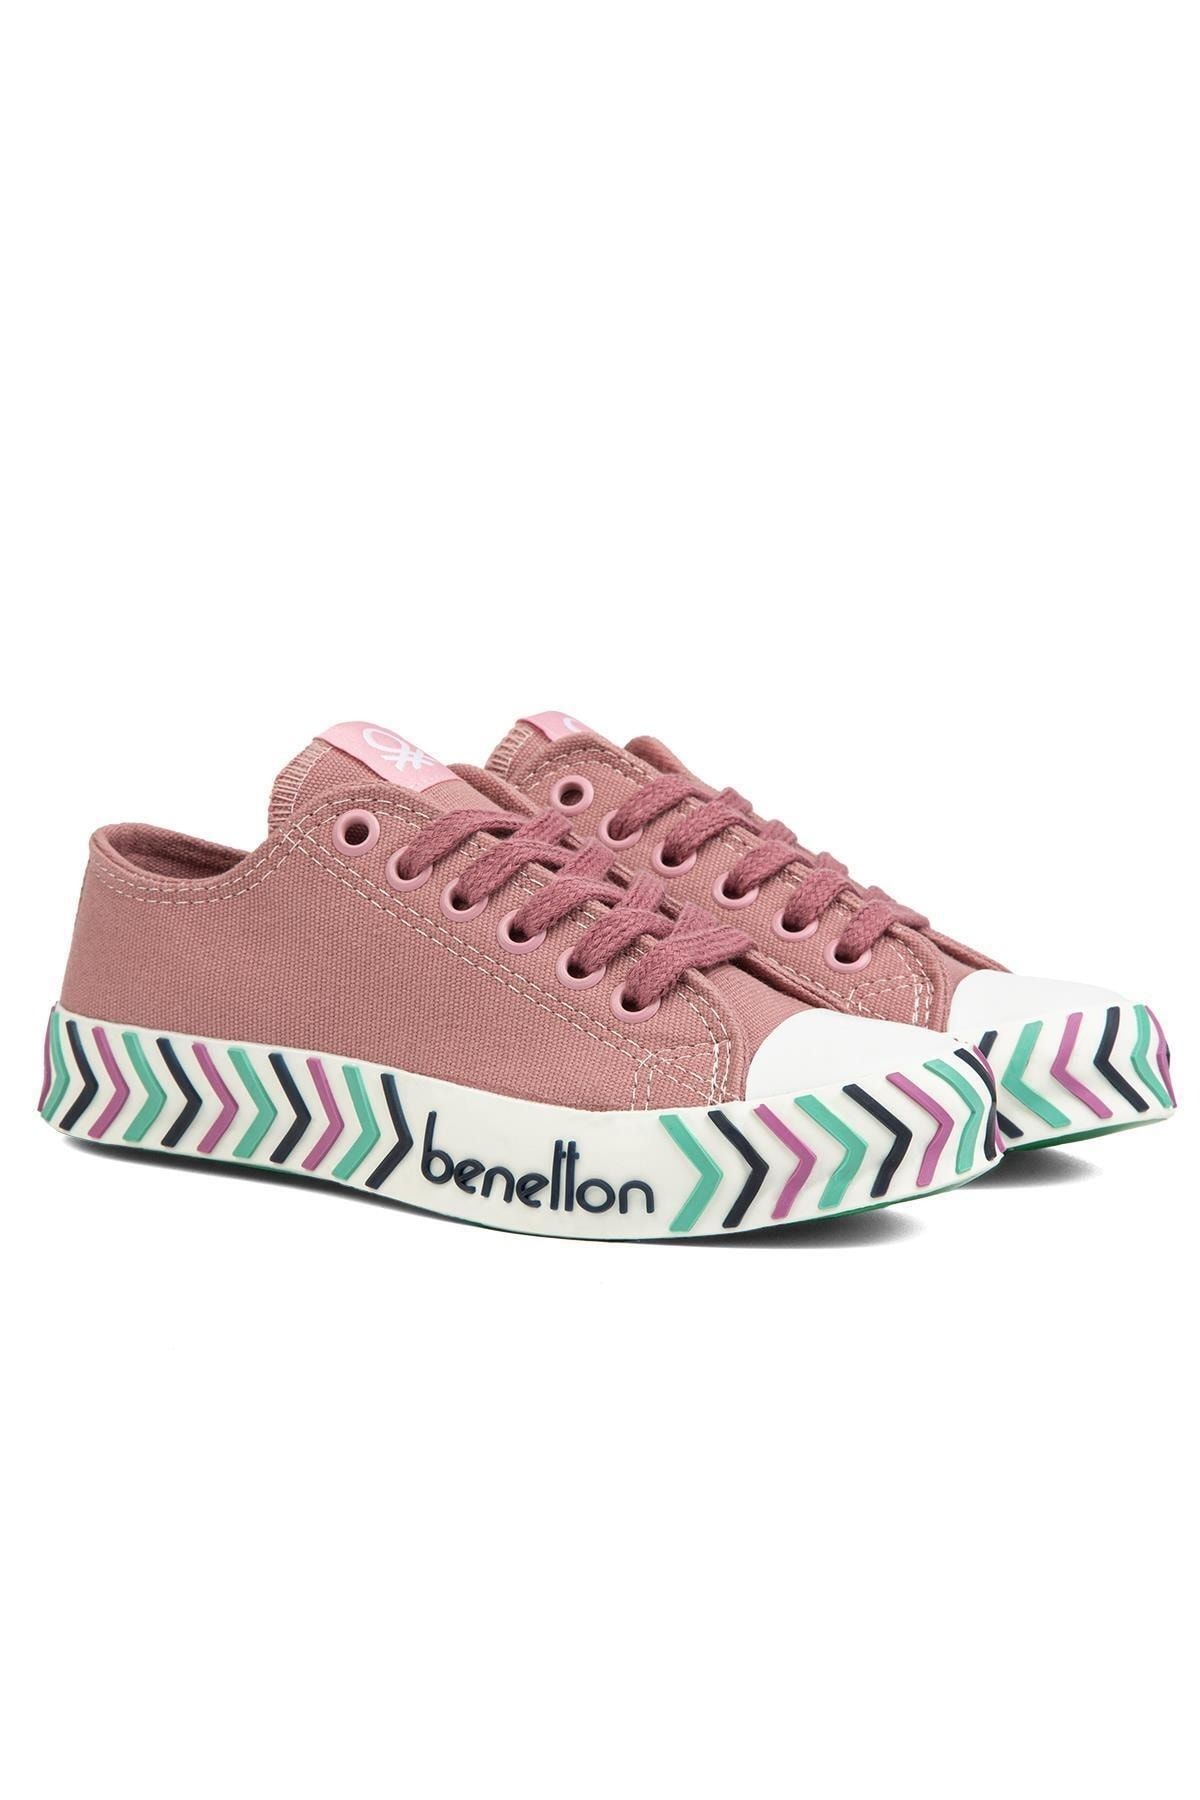 Benetton ® | BN-90624-Gul Kurusu - Kadın Spor Ayakkabı